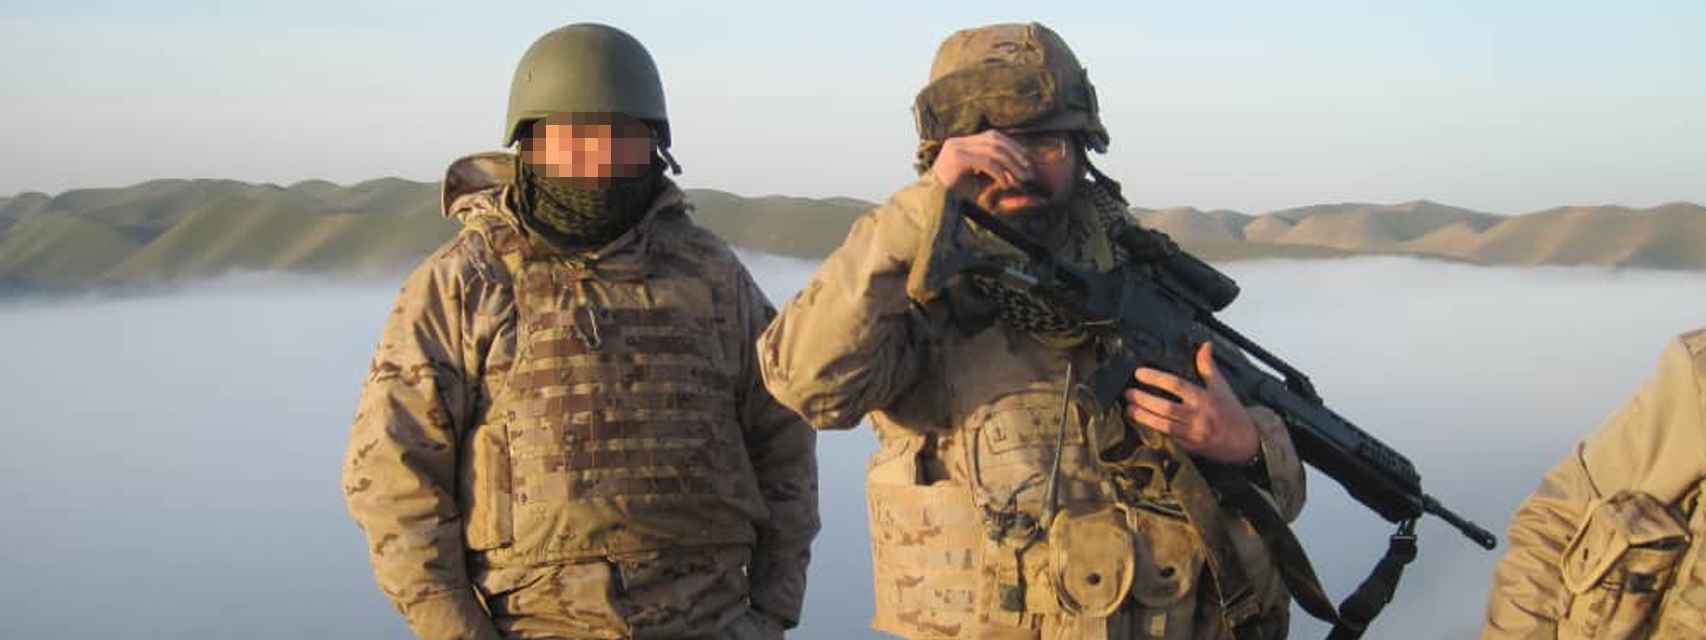 Aziz, junto a un soldado español, en Herat, entre 2011 y 2012.